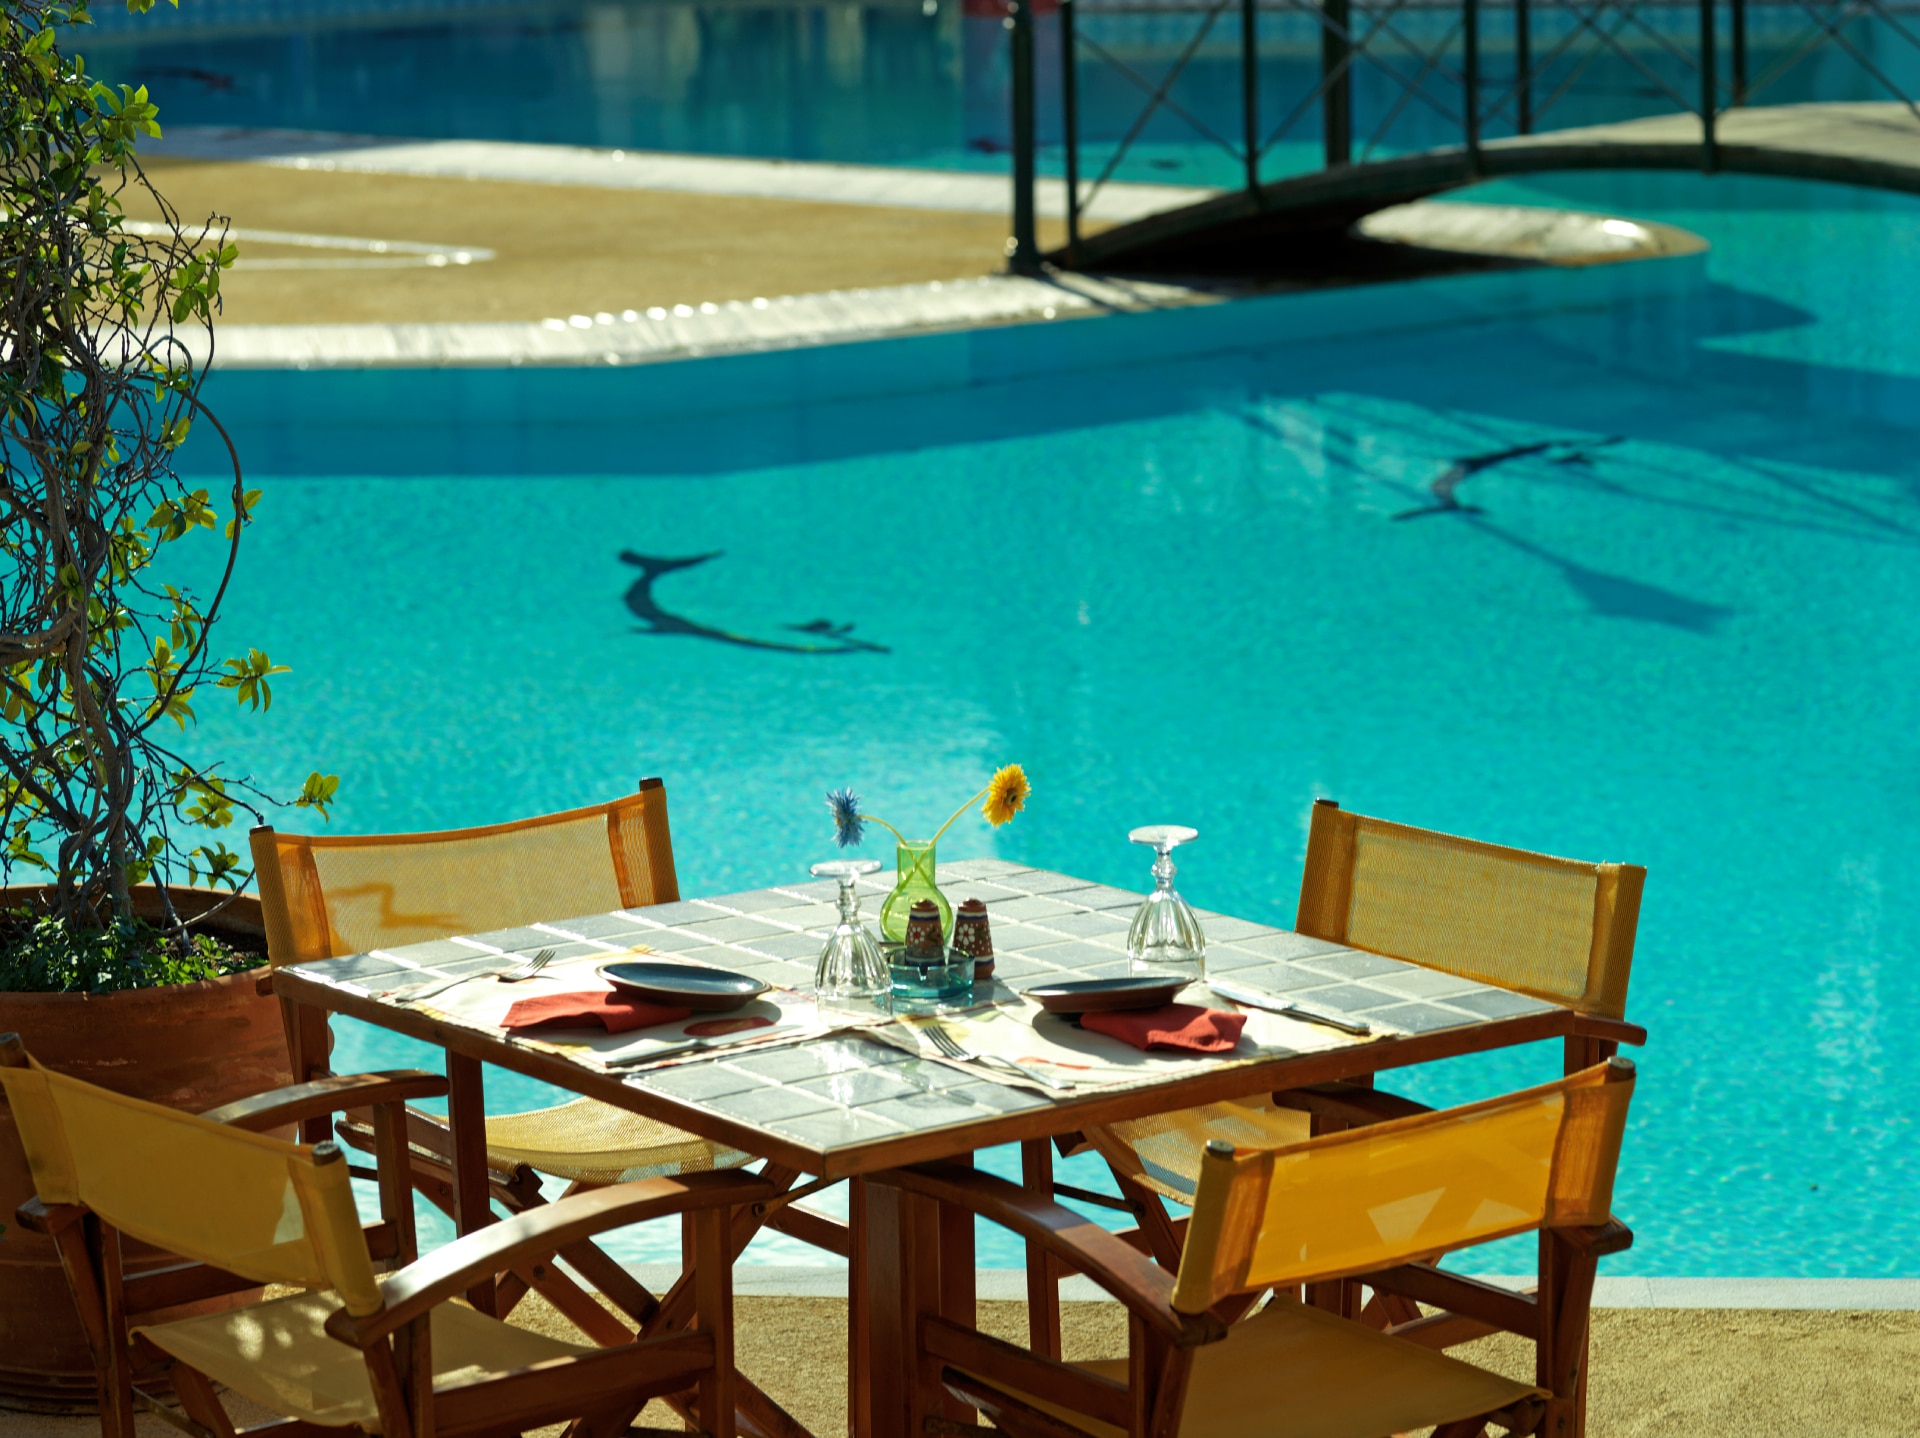 Ένα όμορφα διαμορφωμένο τραπέζι στον υπαίθριο χώρο δίπλα στην πισίνα του εστιατορίου Maistros Pool